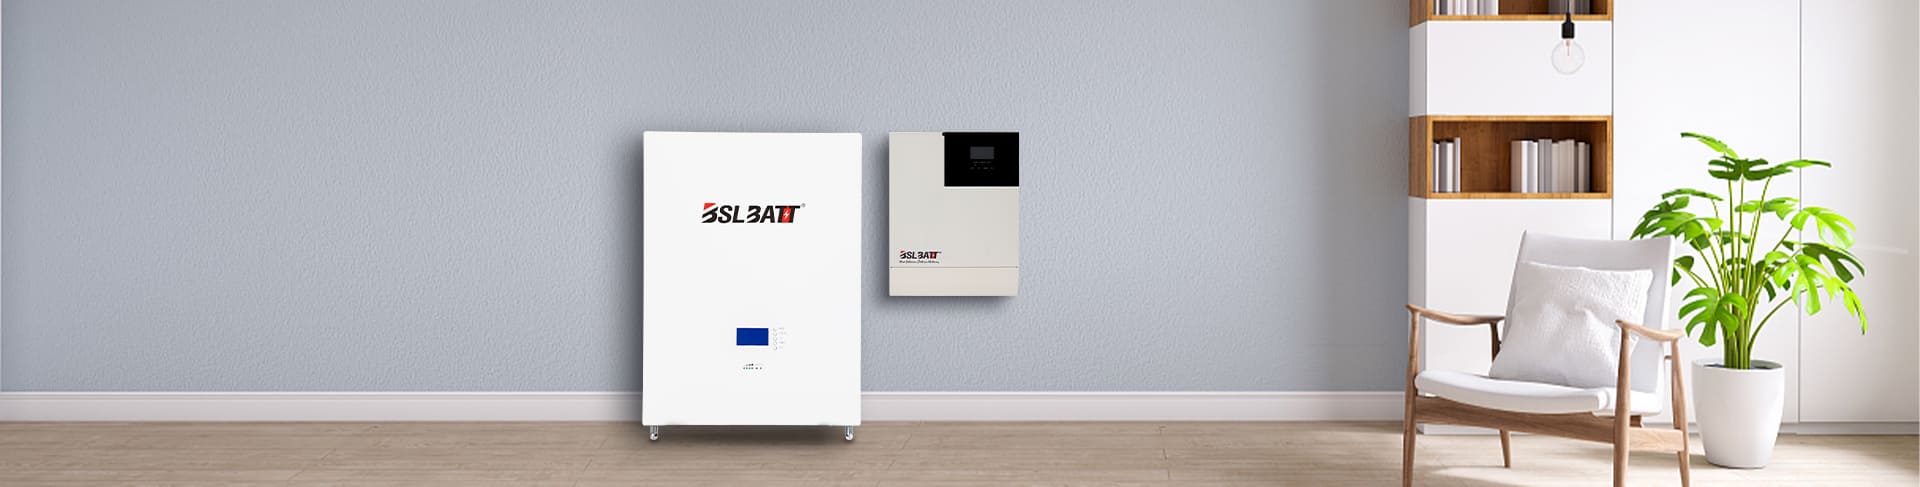 Inversor híbrido de almacenamiento de batería BSLBATT